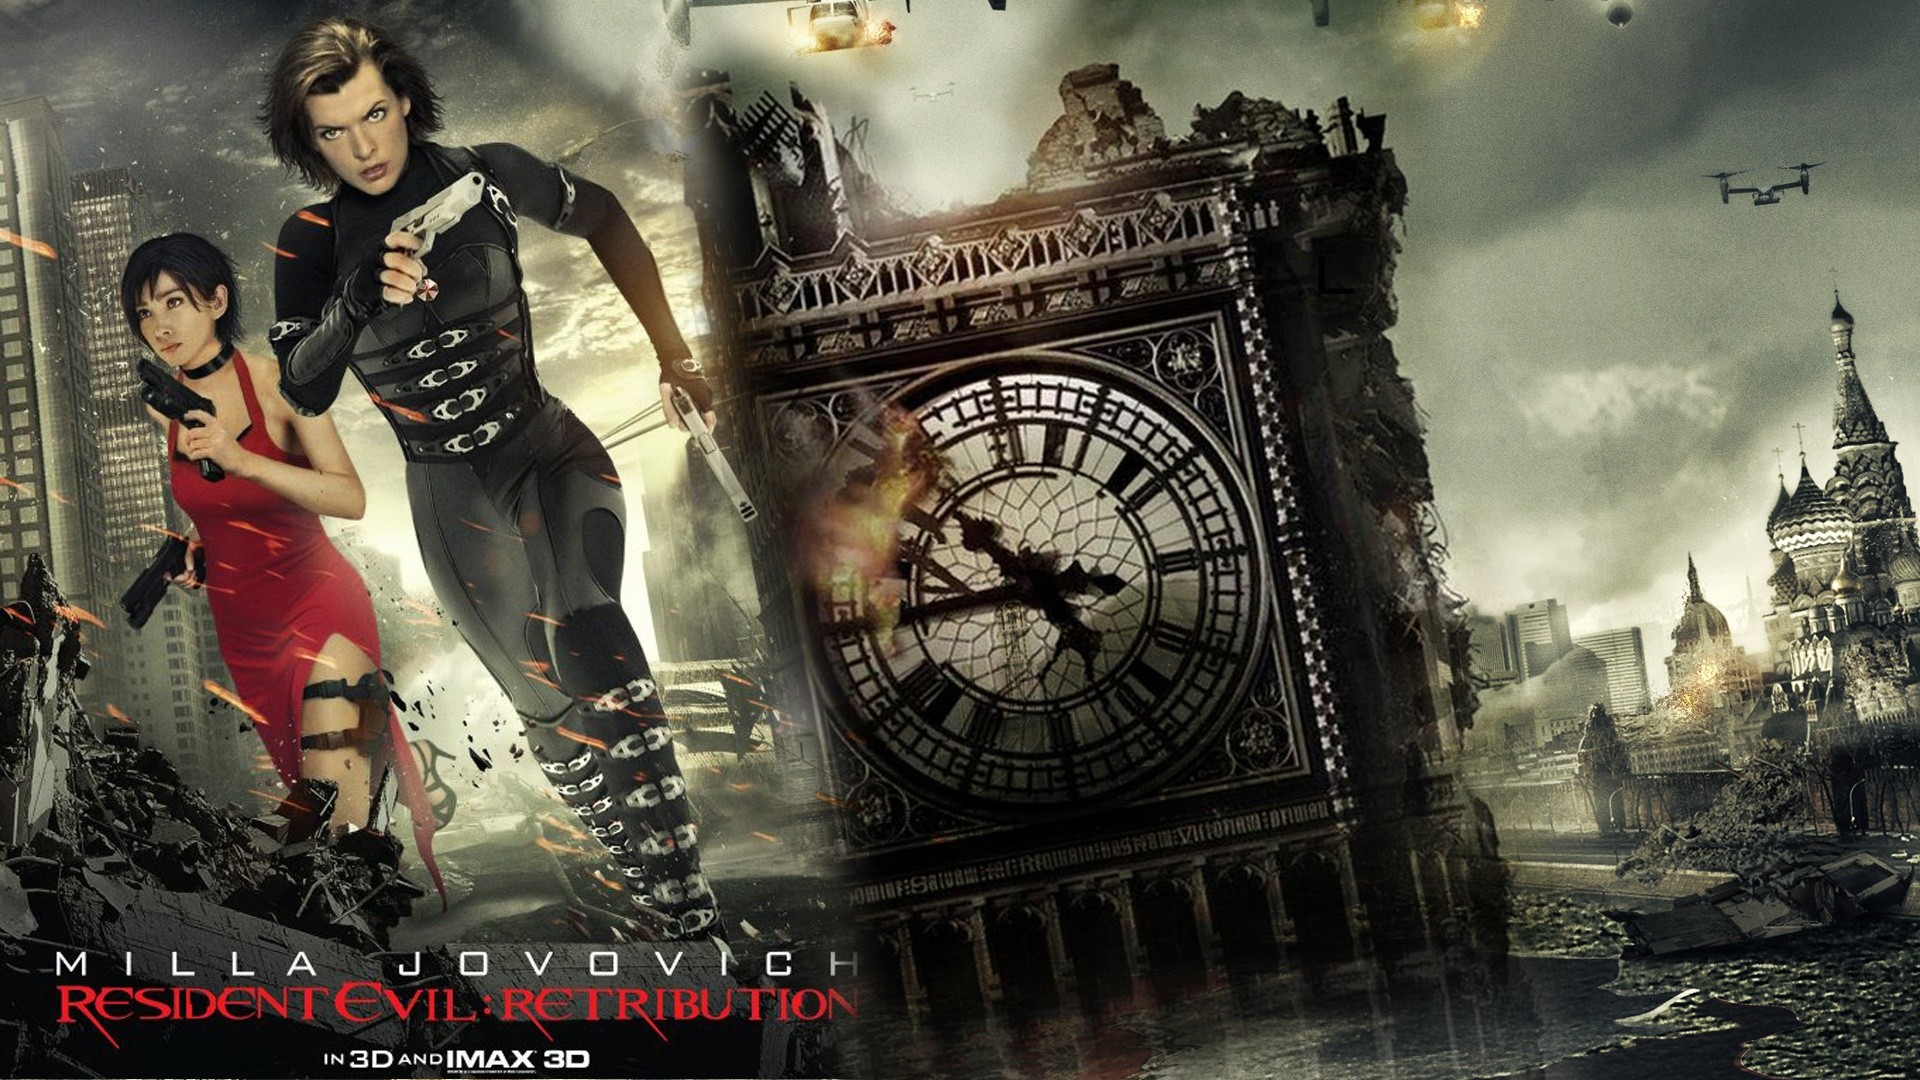 1920x1080 Resident Evil: Retribution movie Wallpaper #15 | Resident Evil | Pinterest